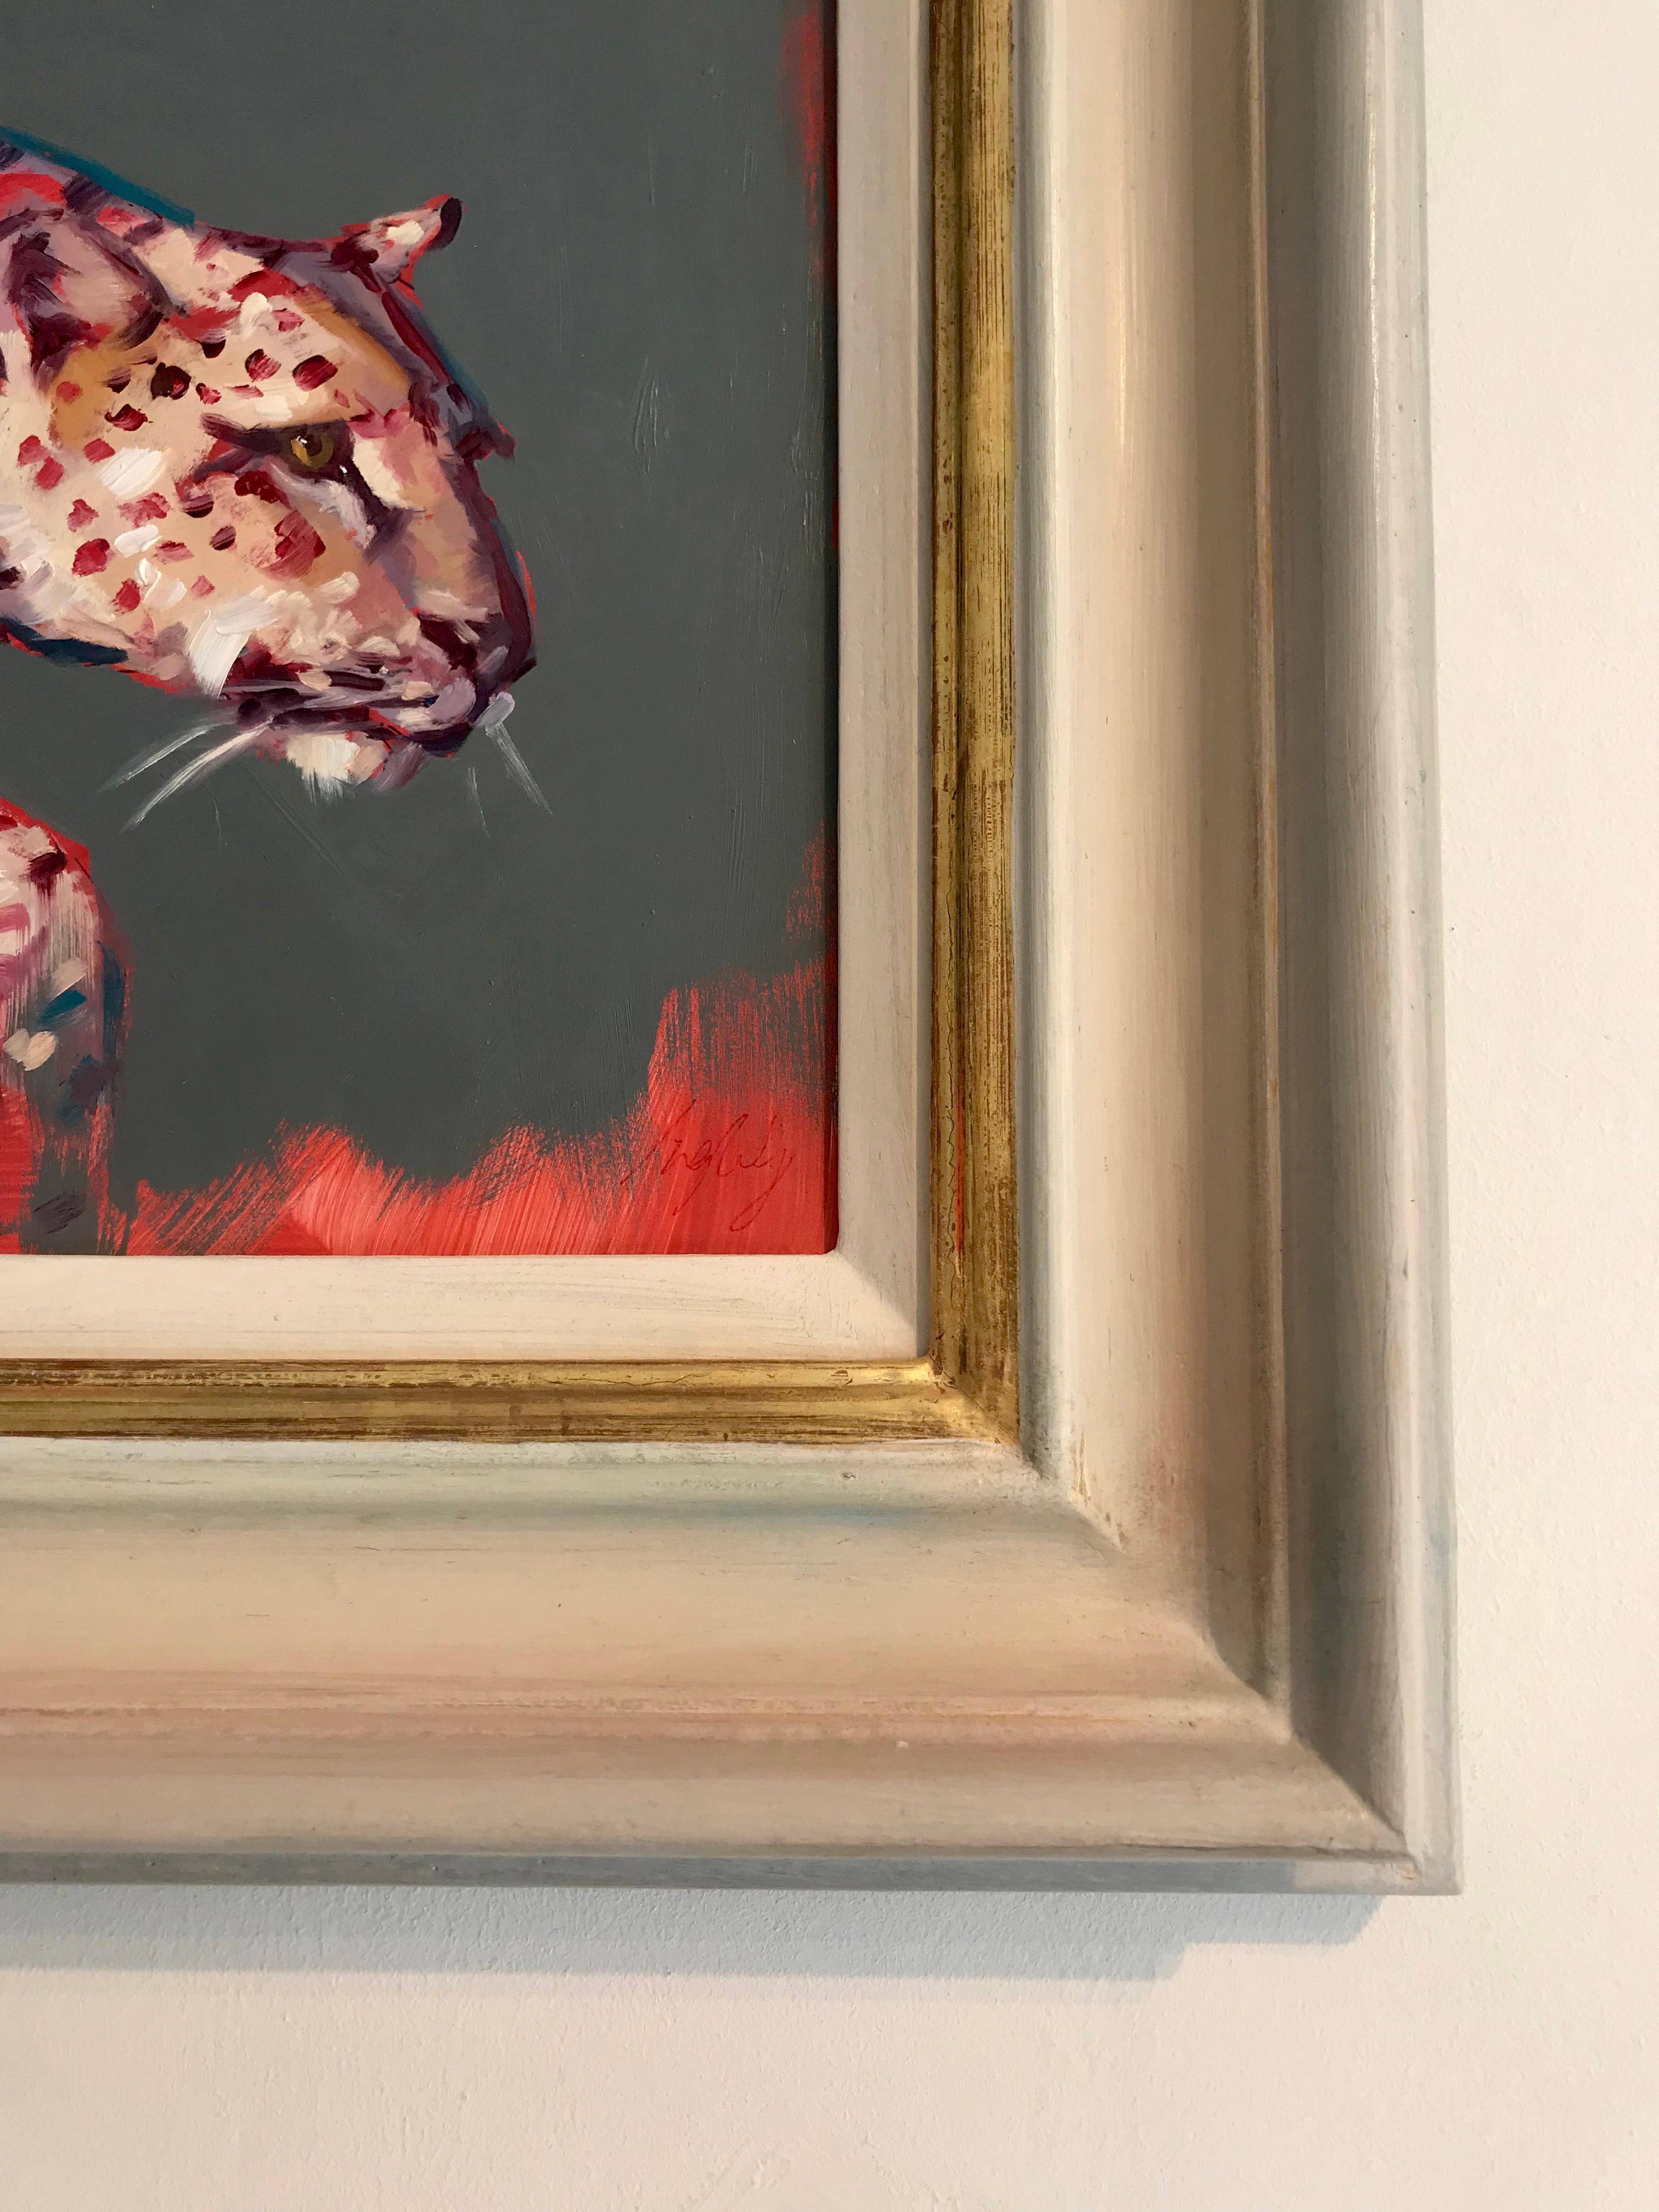 Cette peinture à l'huile originale de Catherine Ingleby dépeint avec amour la beauté d'un guépard en mouvement. L'artiste associe un réalisme attentif à la forme de l'animal sauvage, joliment imprégné de tons roses et rouges qui expriment ses